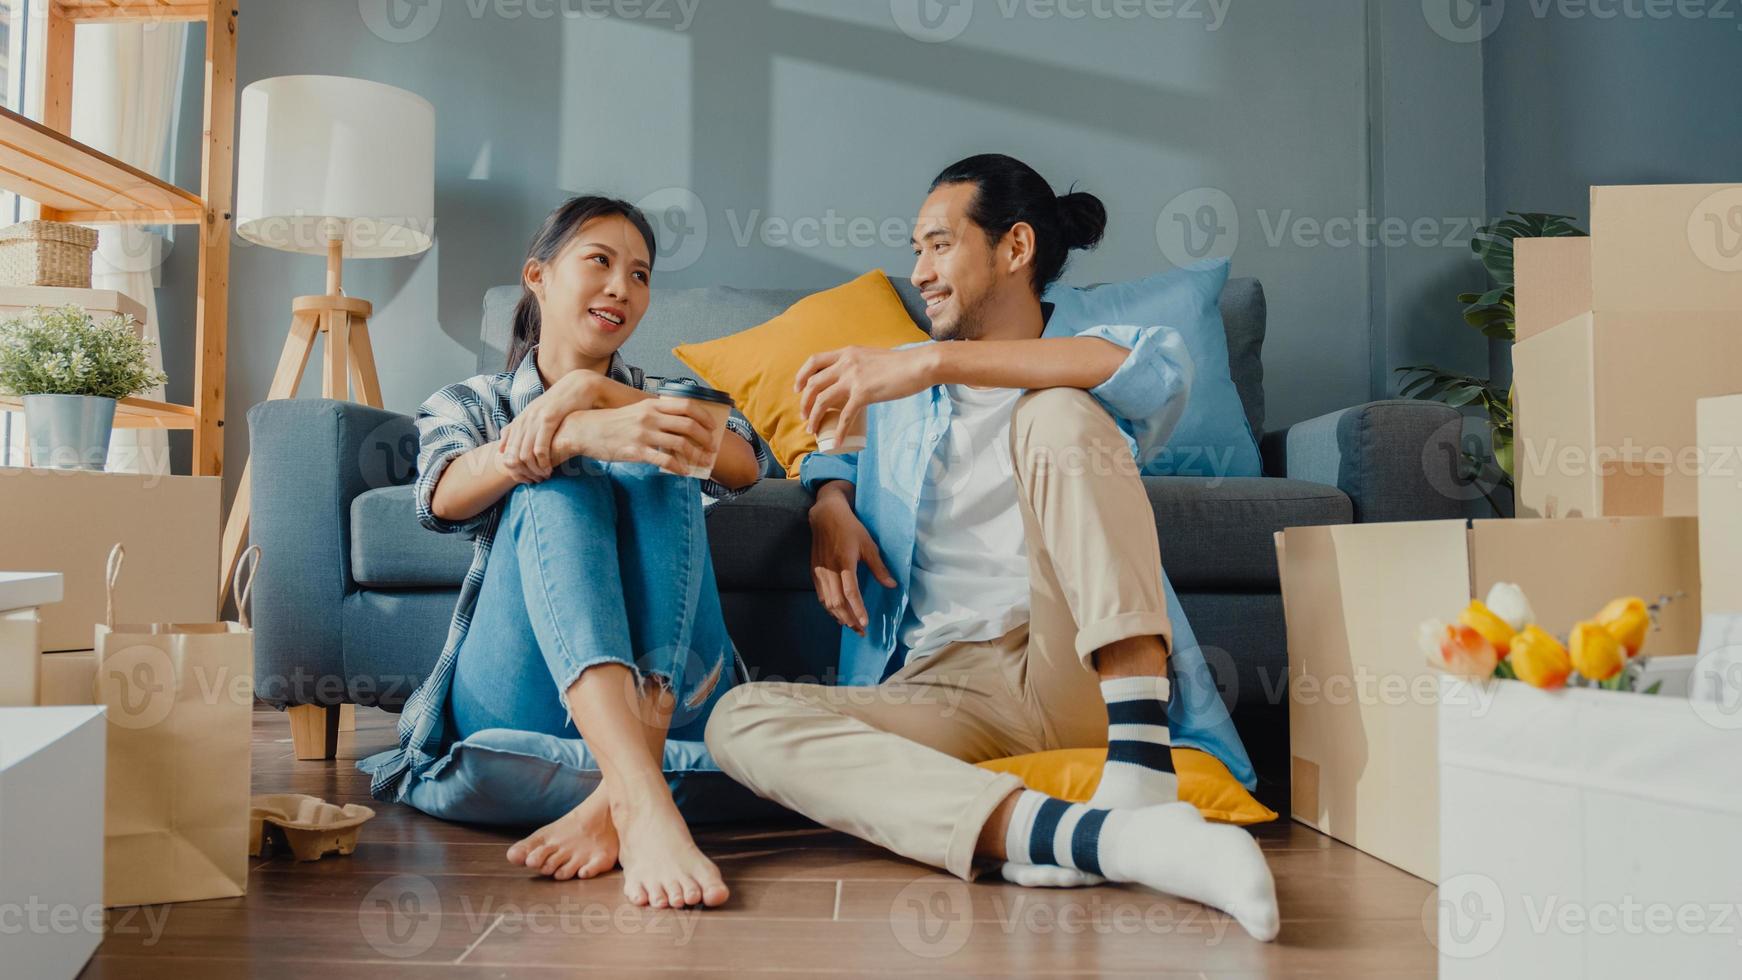 lyckliga asiatiska unga attraktiva par man och kvinna sitter vid nytt hem dricka kaffe koppla av och prata leende med kartongförpackning förvaring för att flytta i nytt hus. unga gifta asiatiska flytta hem koncept. foto